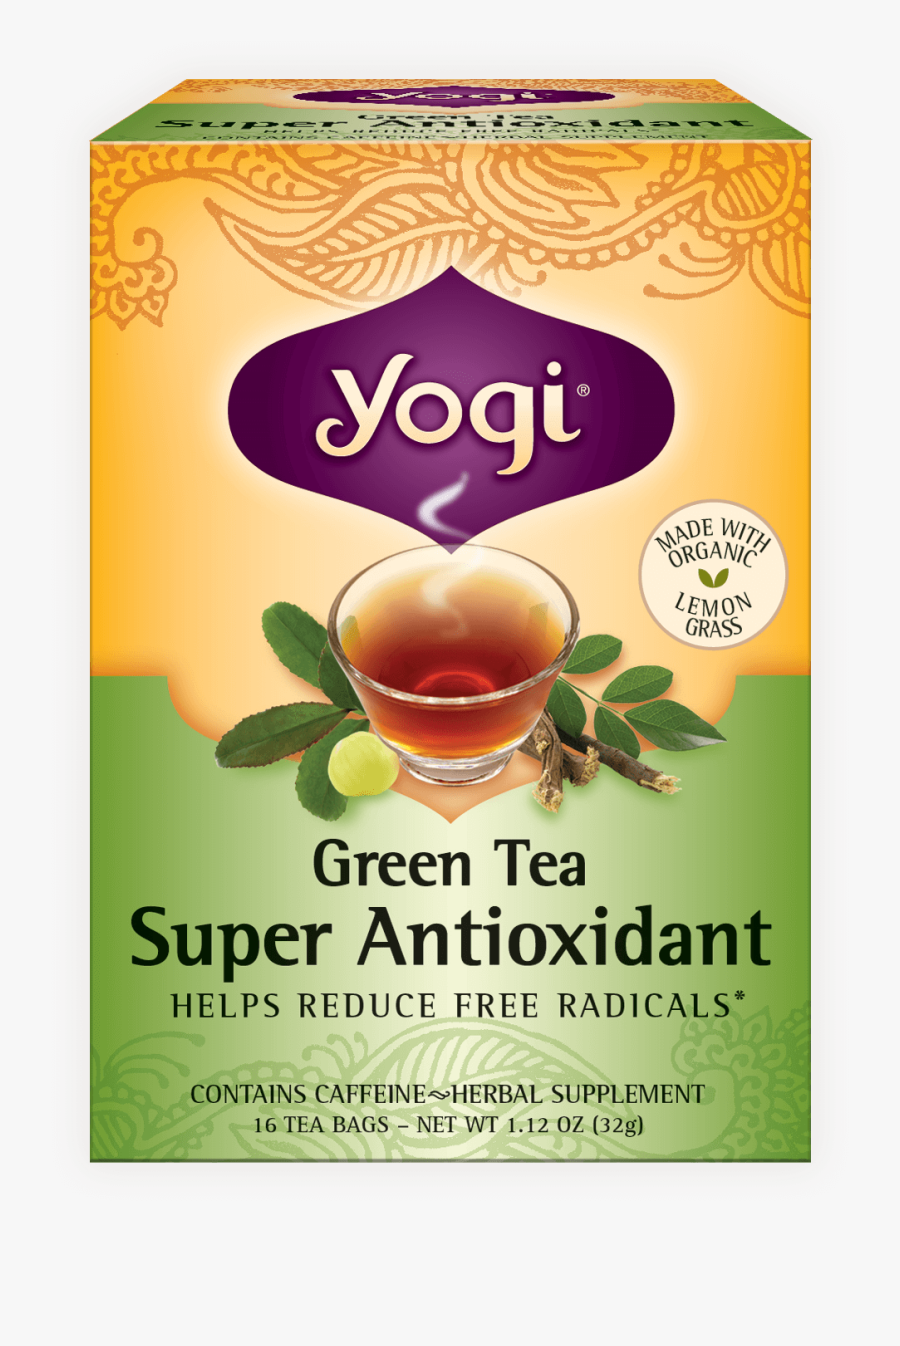 Green Tea Super Antioxidant - Yogi Tea, Transparent Clipart